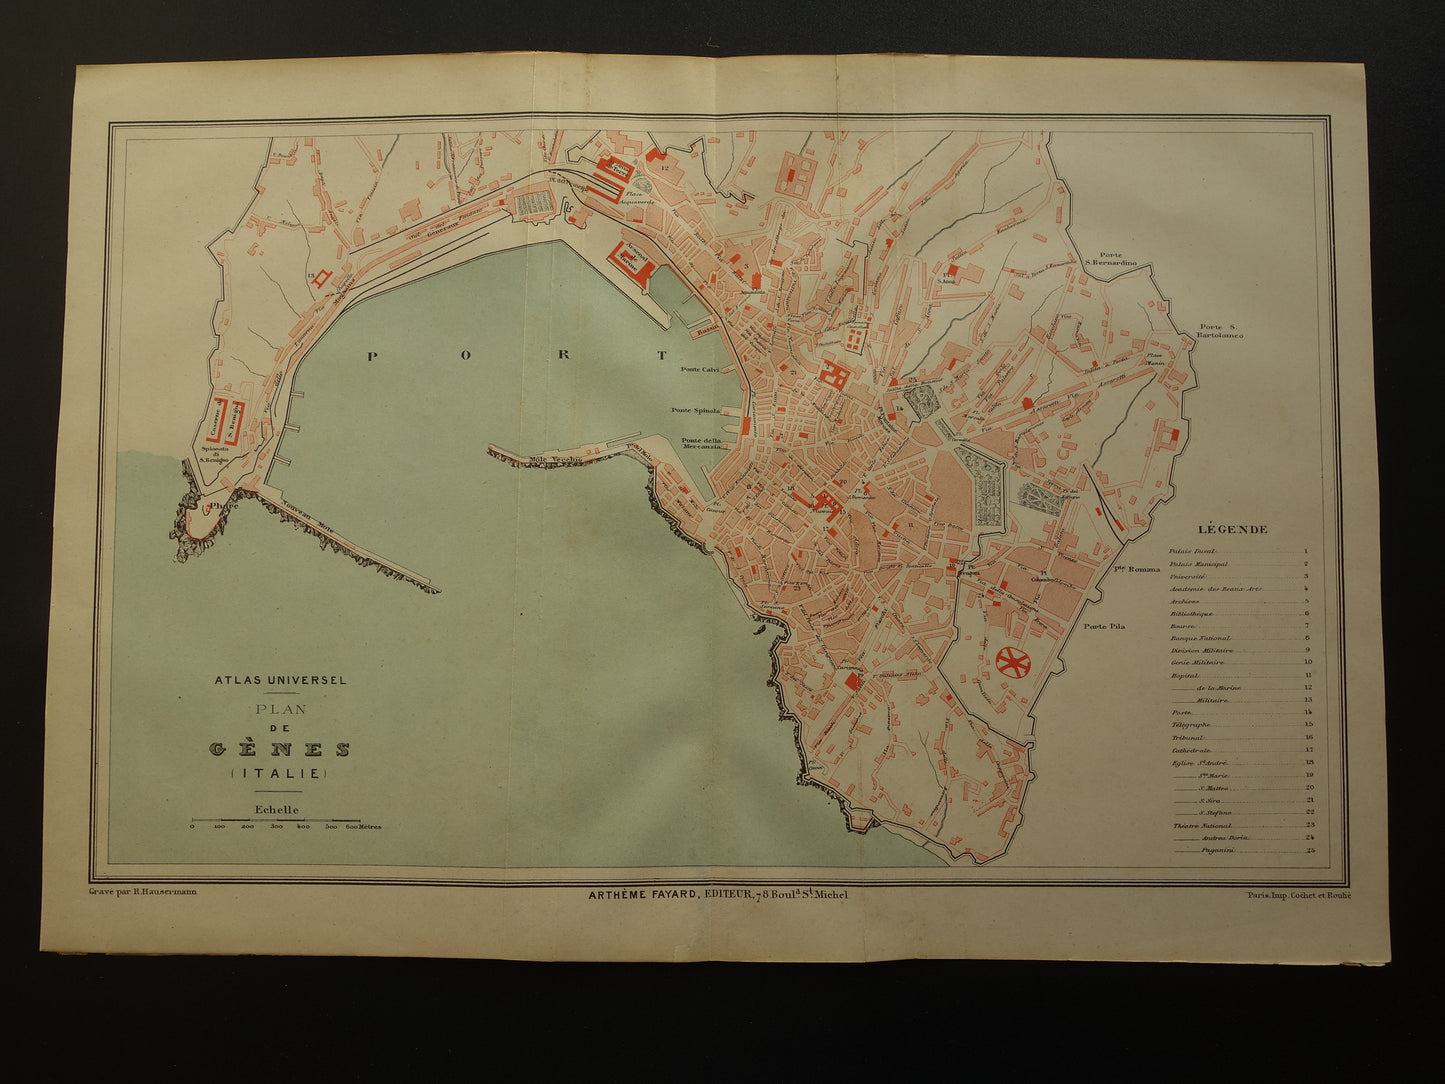 GENUA antieke kaart van Genua Italië uit 1879 originele oude vintage Franse plattegrond